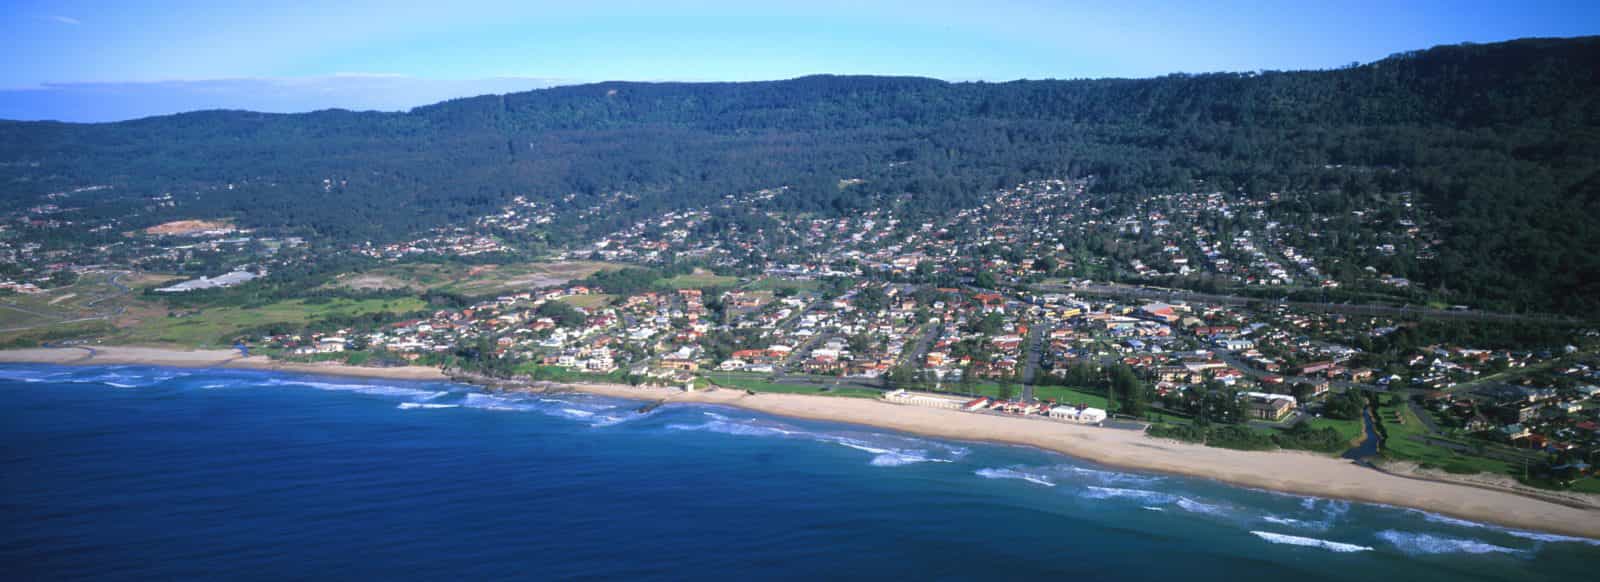 Thirroul Beach Aerial View